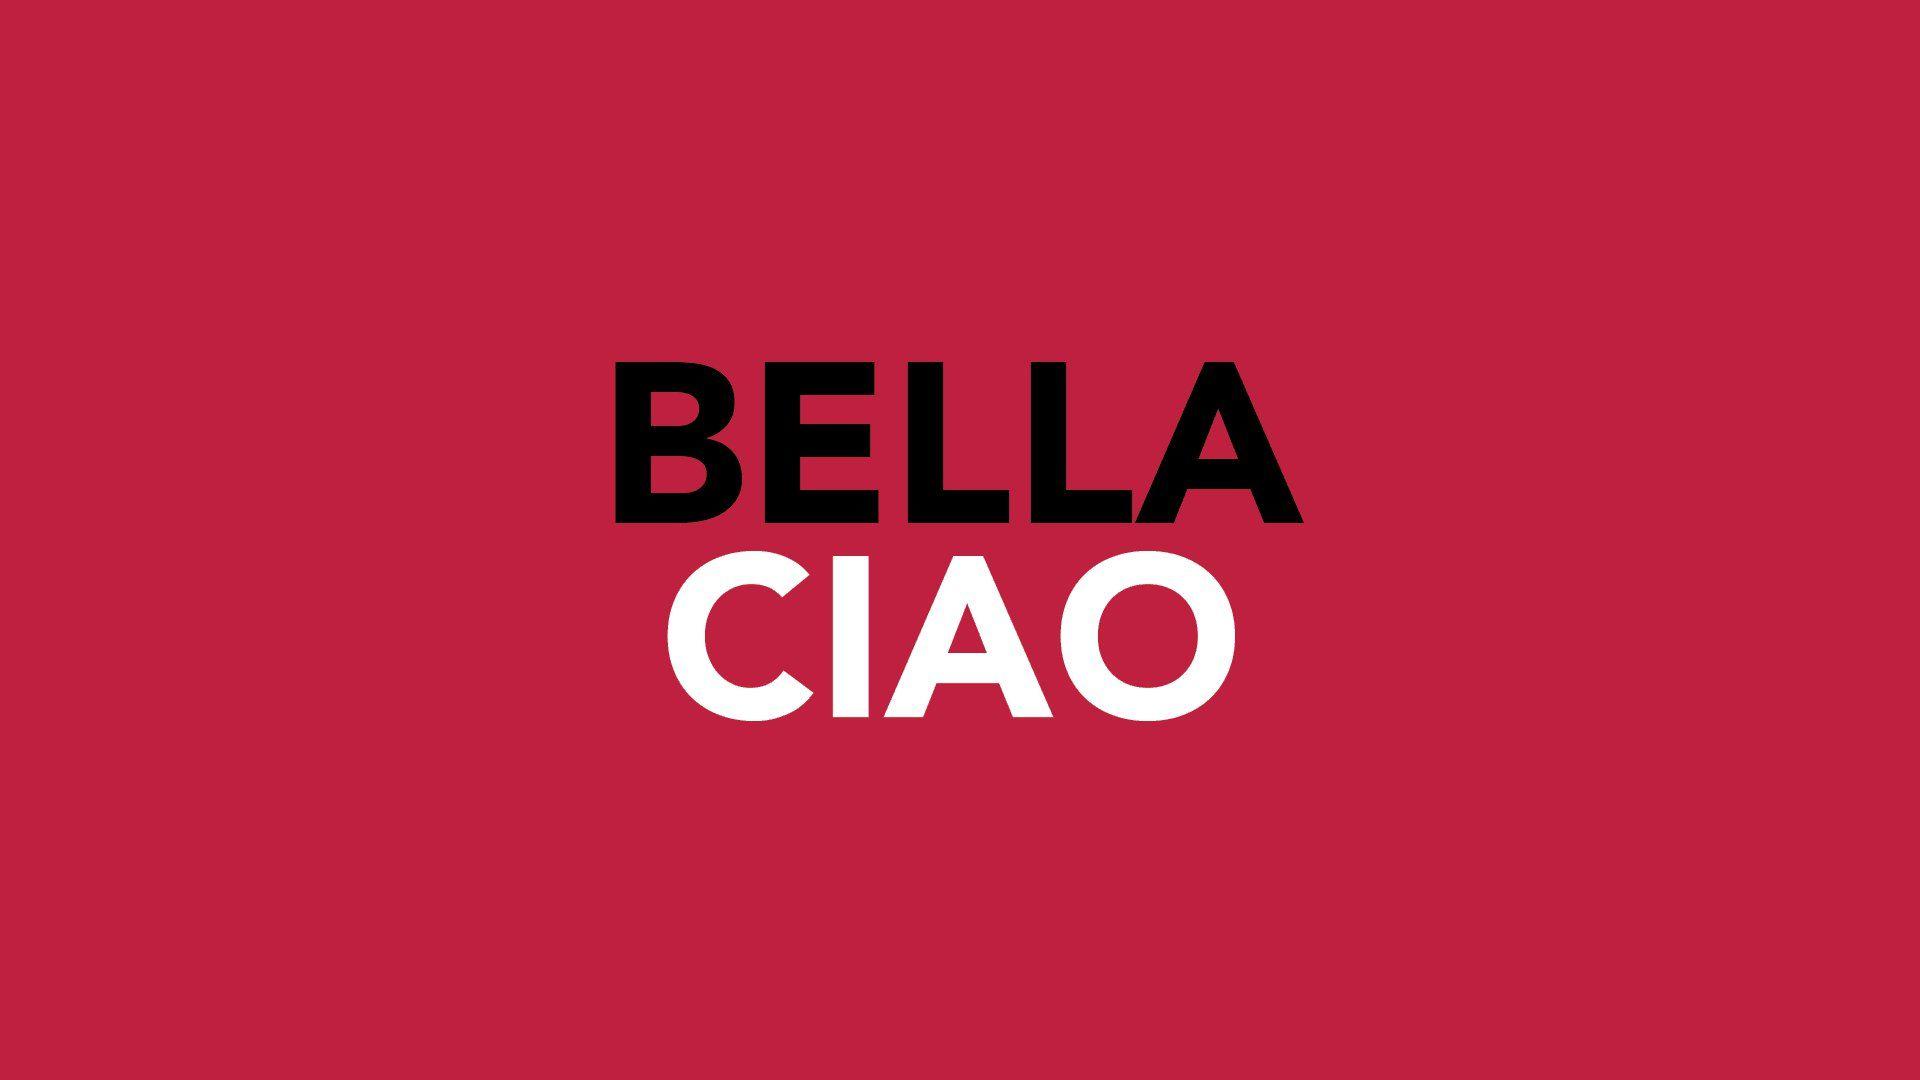 Bella Ciao HD Wallpaper